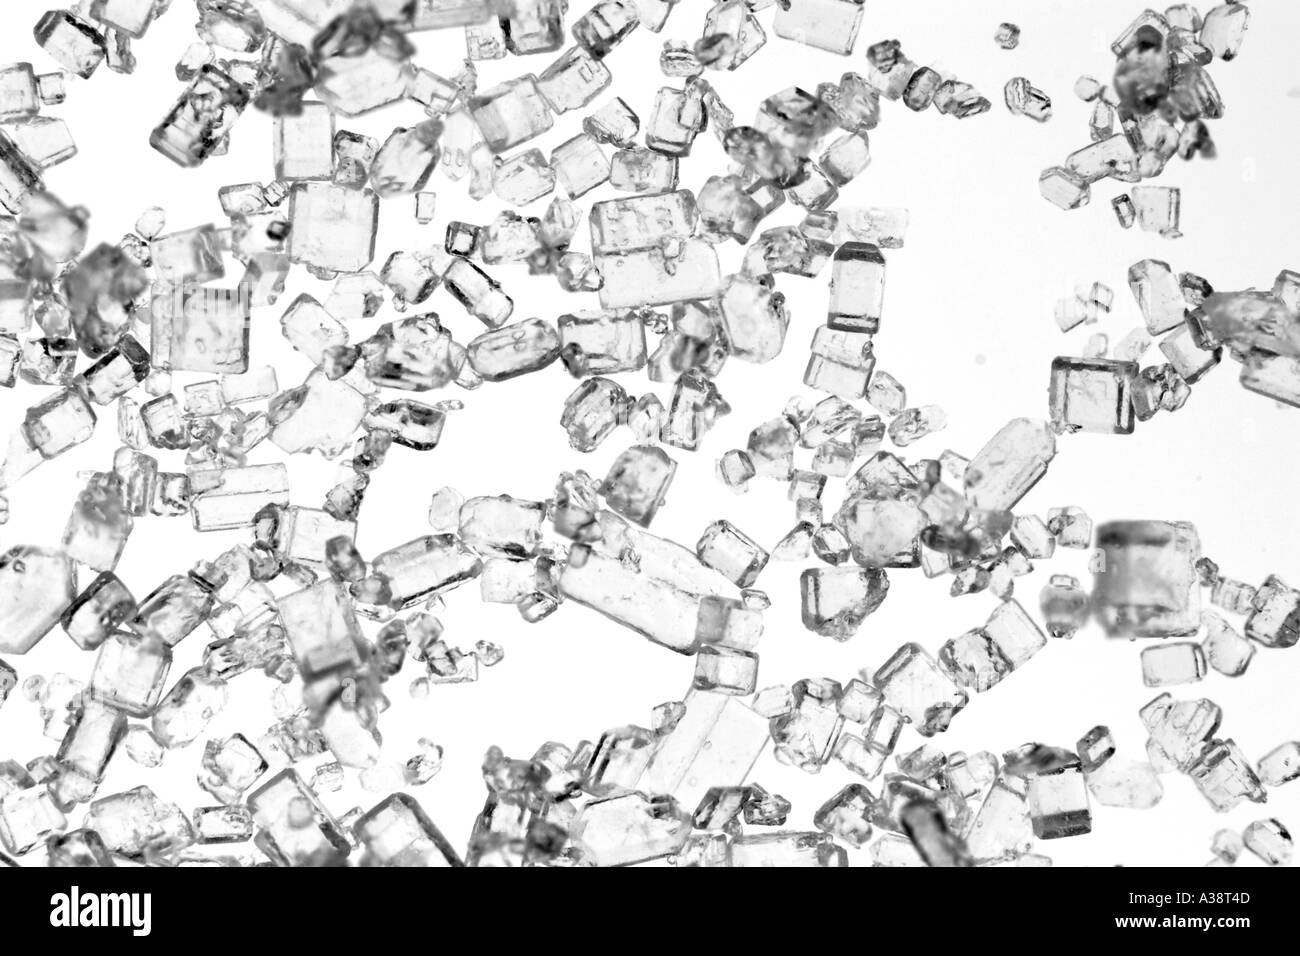 macro image of backlit sugar crystals Stock Photo